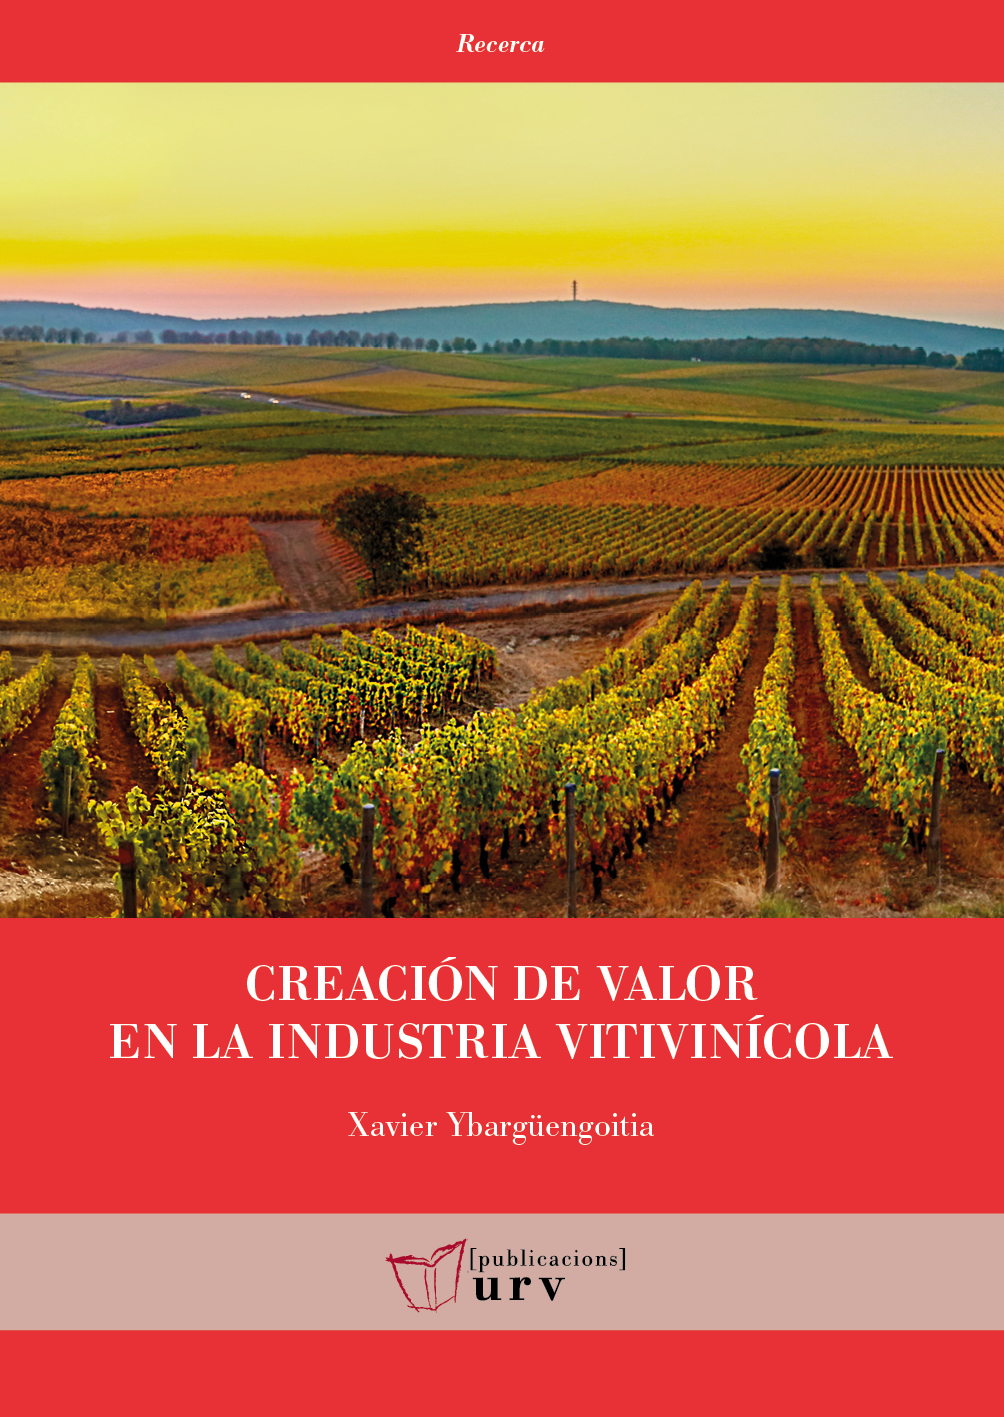 Creación de valor en la industria vitivinícola